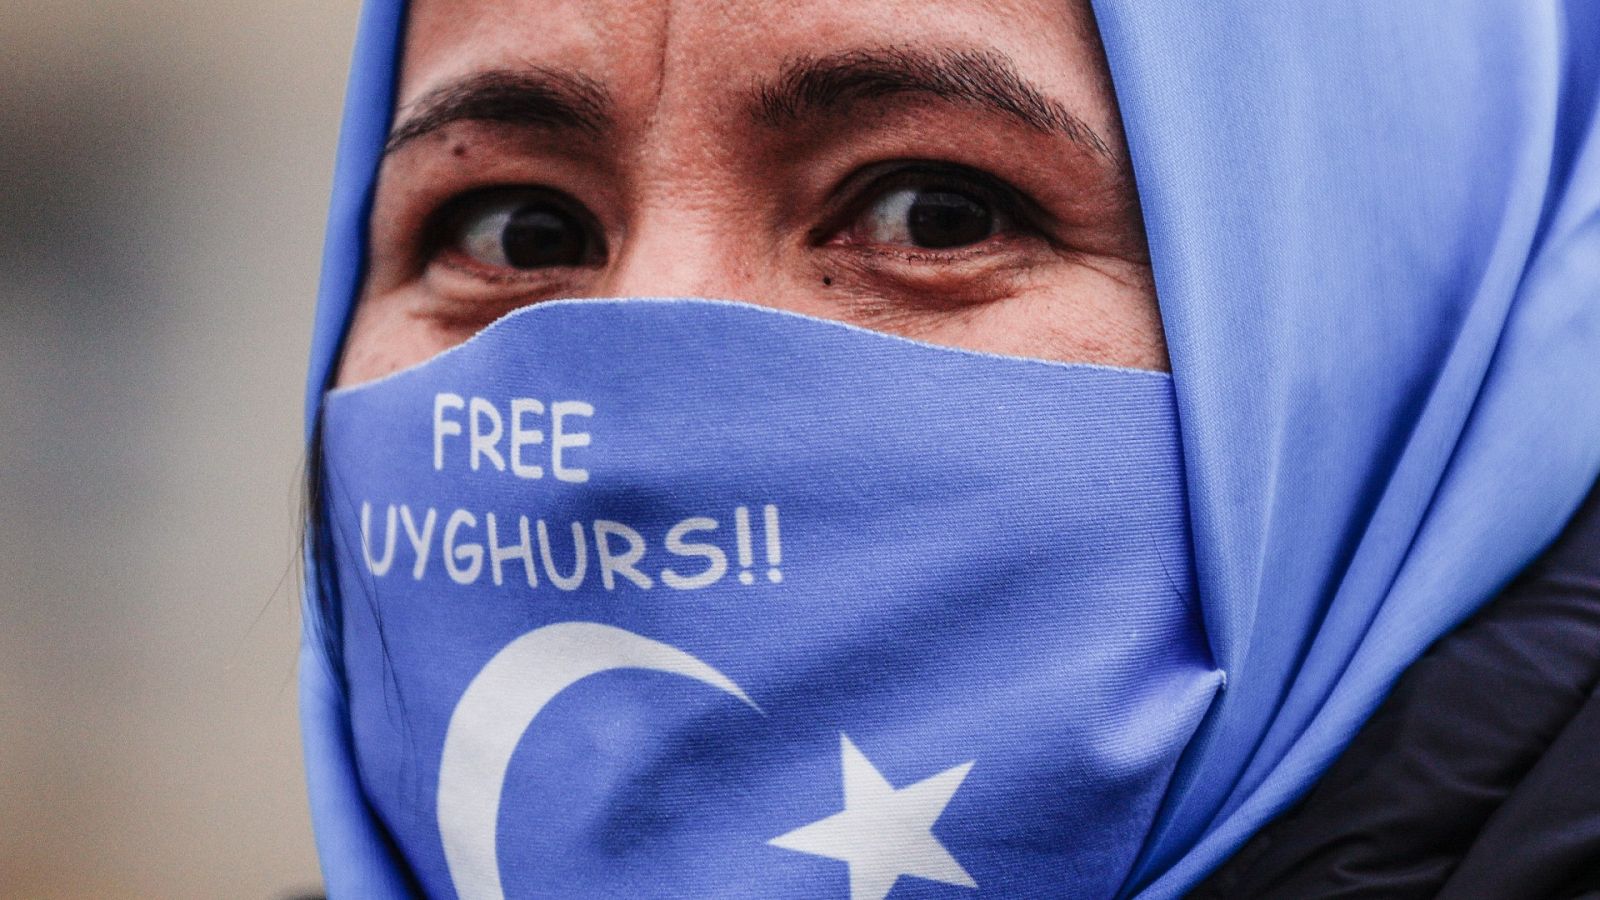 Demuestran la persecución de la minoría musulmana uigur en China